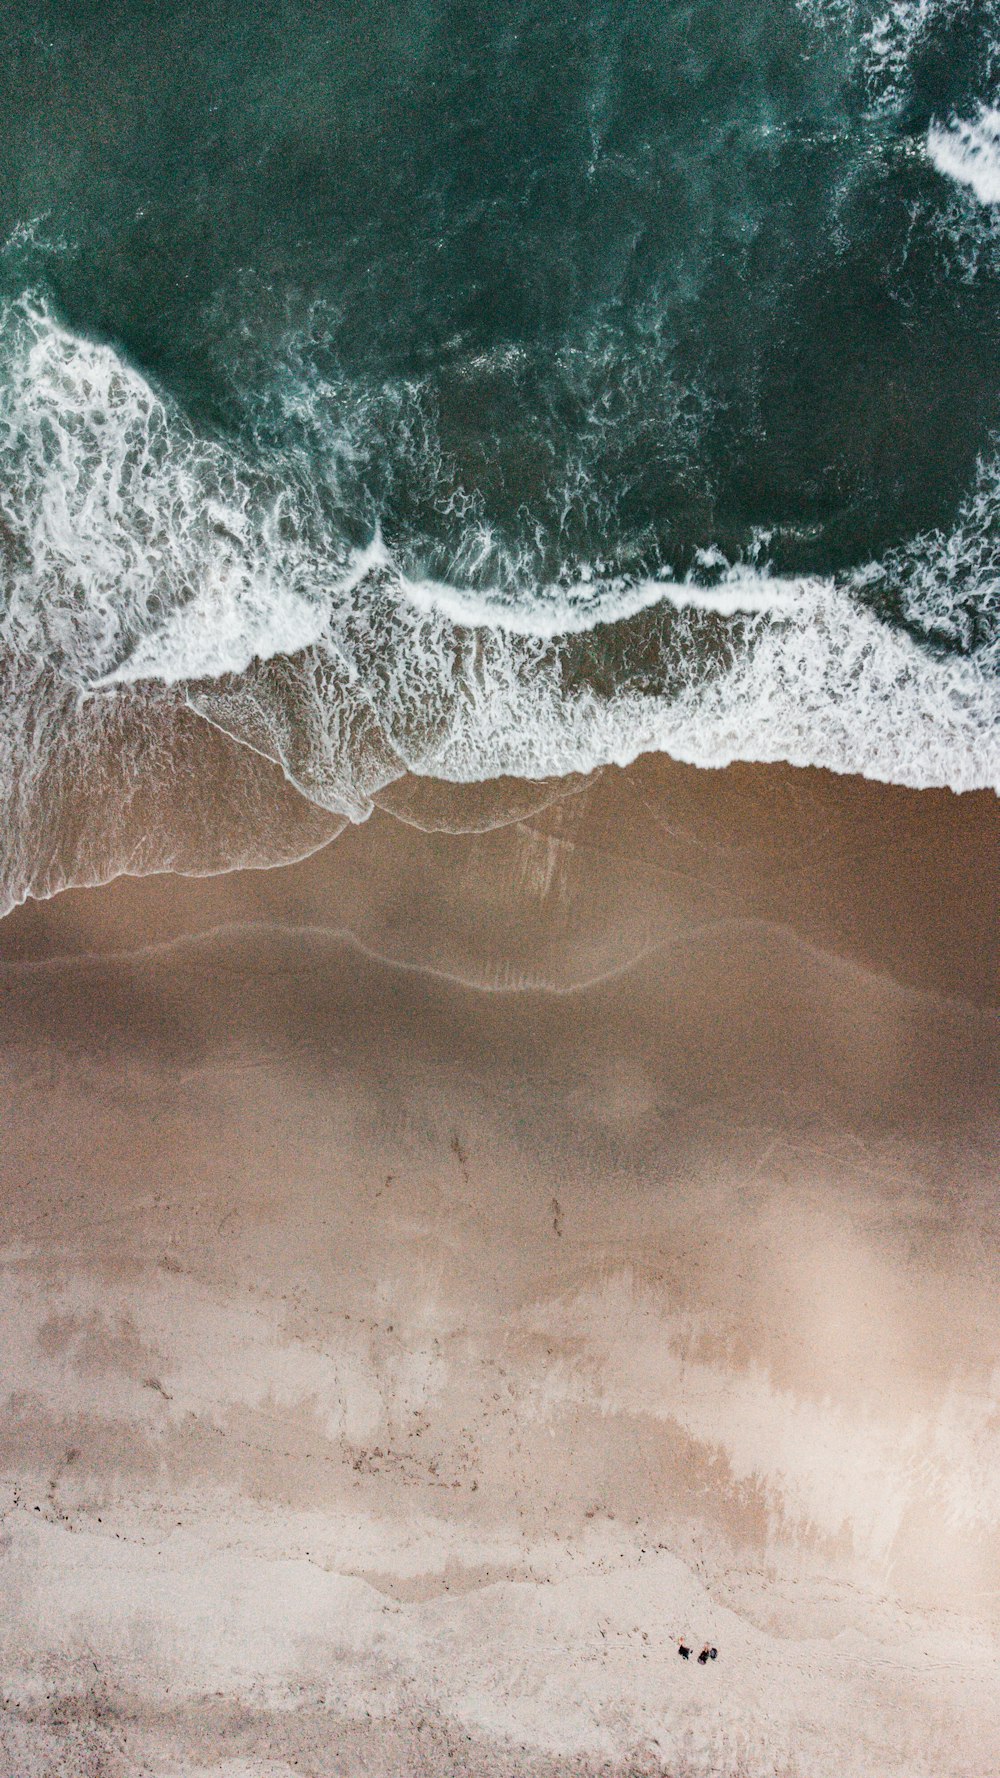 une vue aérienne d’une plage de sable avec des vagues